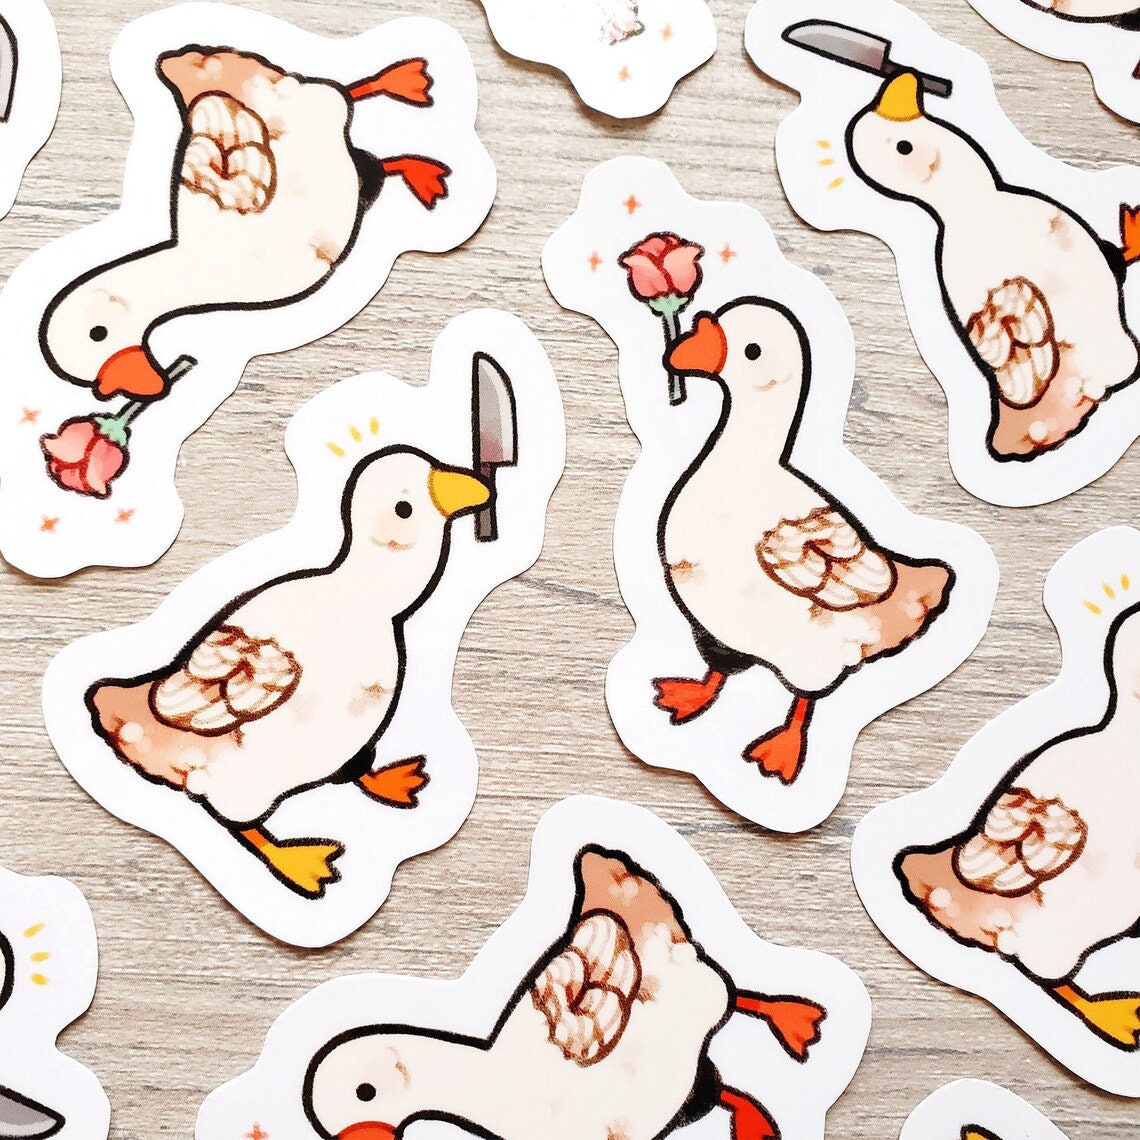 Bird Sticker Sheet, Cute Bird Stickers, A5 Vinyl Sticker Sheet, Budgie,  Parakeet, Toucan, Blue Jay, Cardinal, Conure, Pigeon, Cockatiel